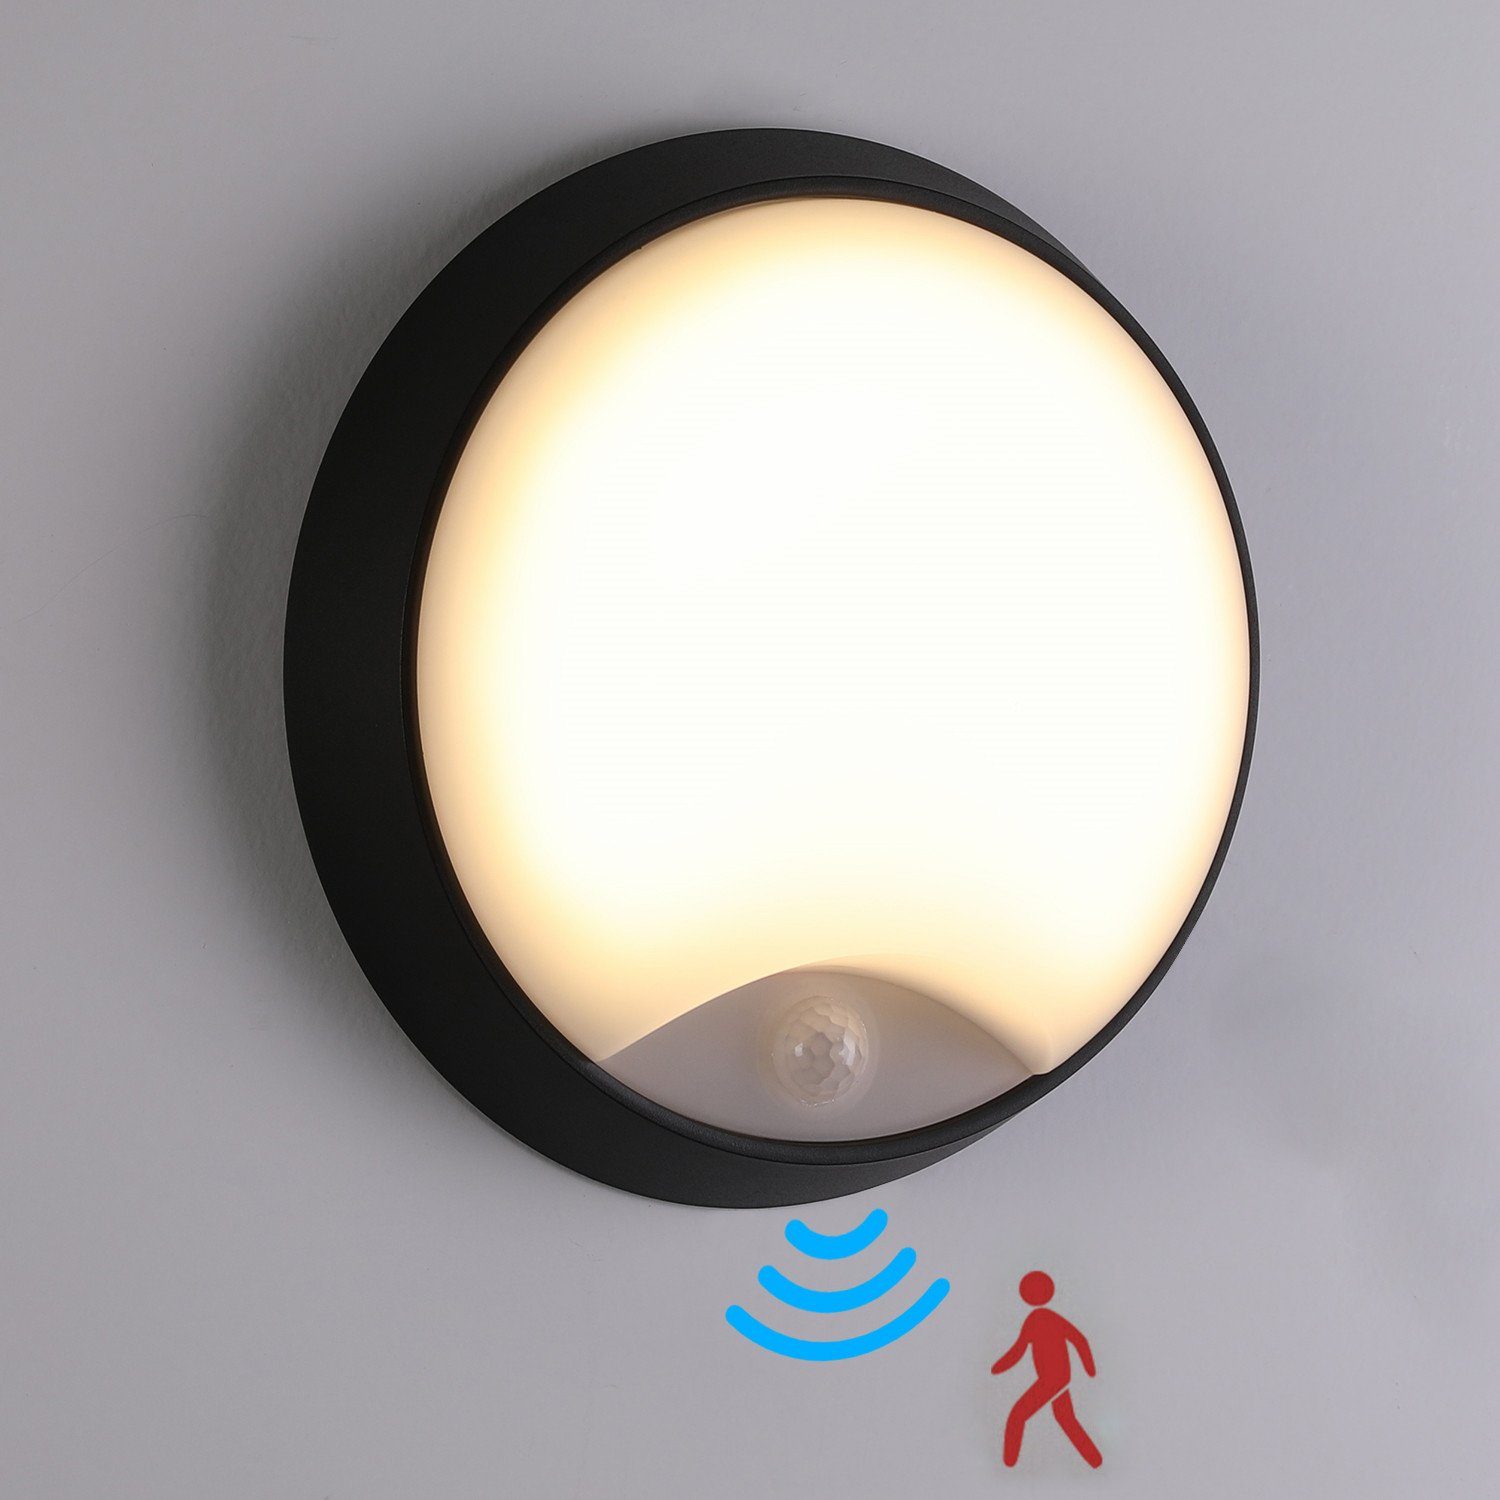 iscooter Außen-Wandleuchte LED Wandleuchte Wand-Lampe mit Bewegungsmelder IP54 Rund Innen Außen, LED fest integriert, Warmweiß, 10W LED Aussenleuchte, 10 m Reichweite, Außenbeleuchtung von Wänden | Wandleuchten